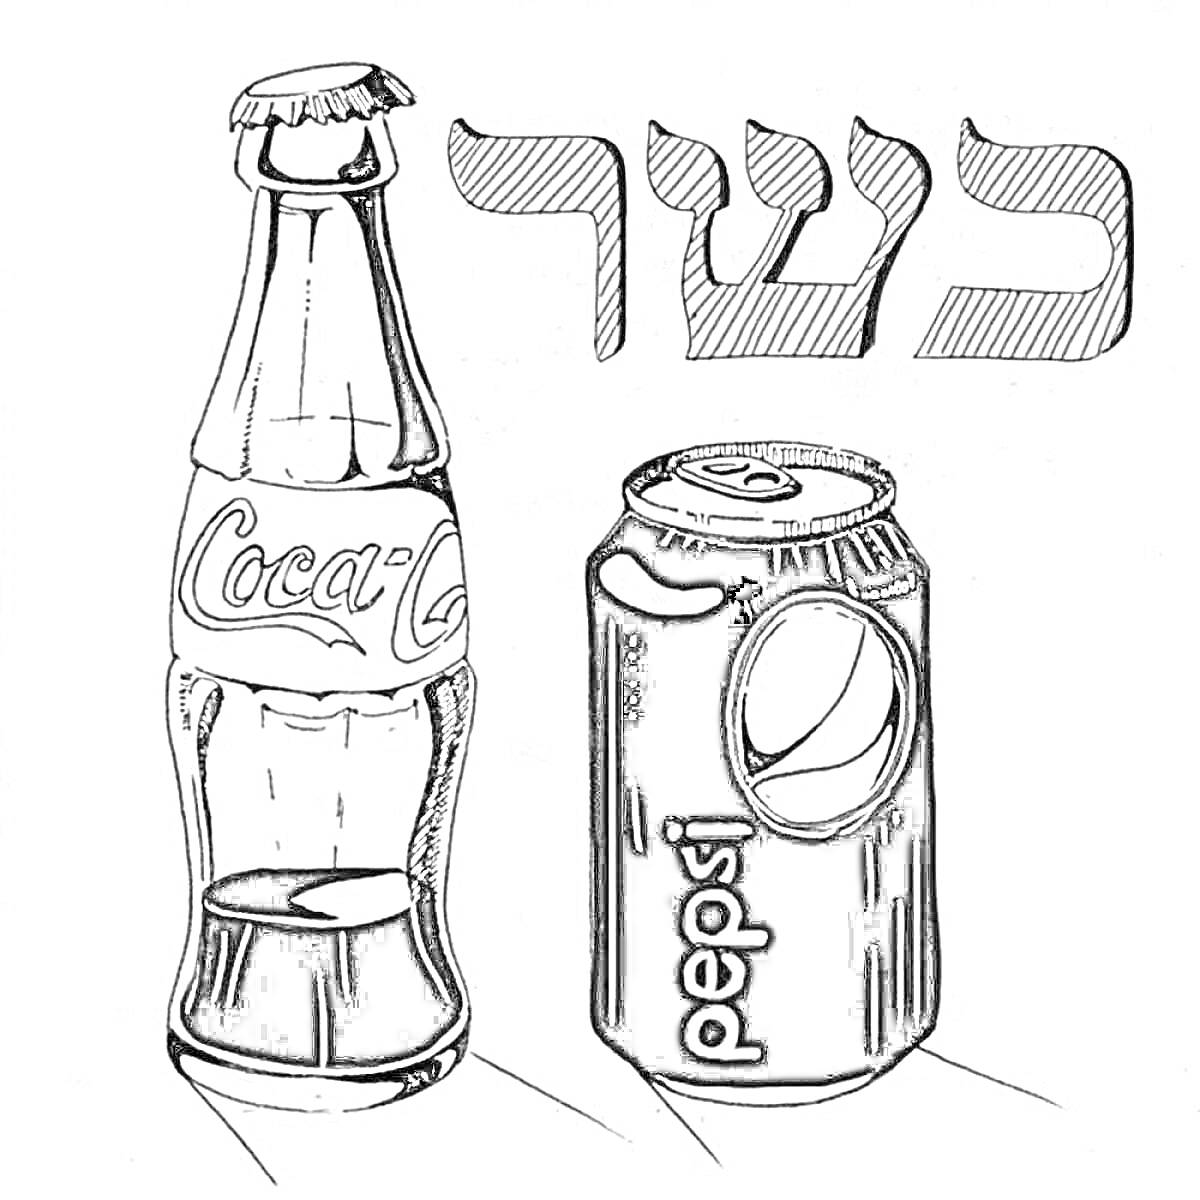 Раскраска бутылка Coca-Cola и жестяная банка Pepsi с надписью на иврите